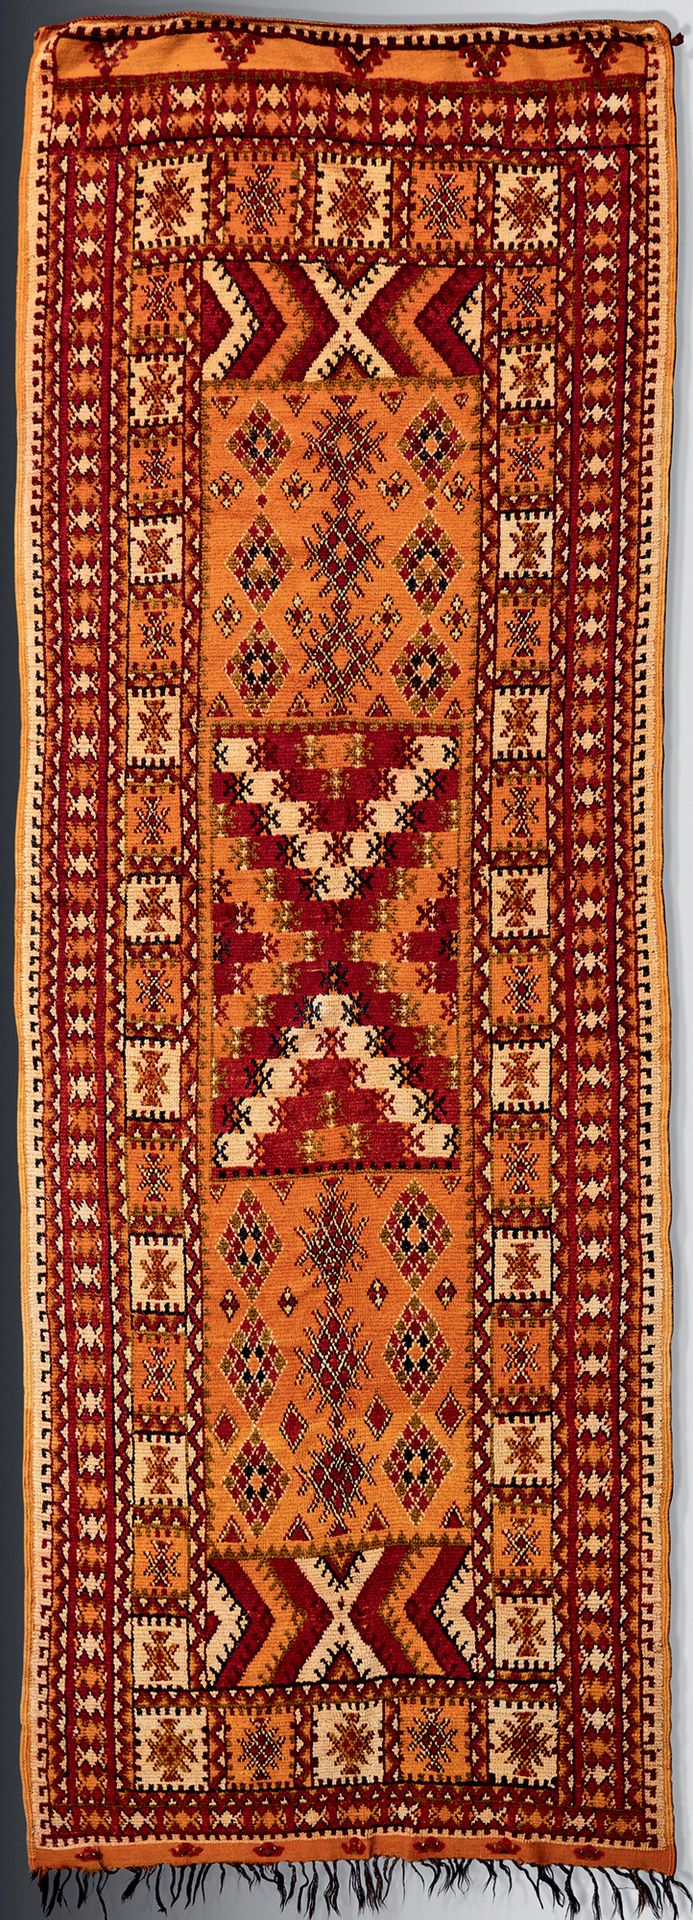 Null 橙色背景上有几何装饰的画廊地毯、
20世纪，摩洛哥。
长 : 1,44 - 高 : 3,78 米
状况良好，有些变形。